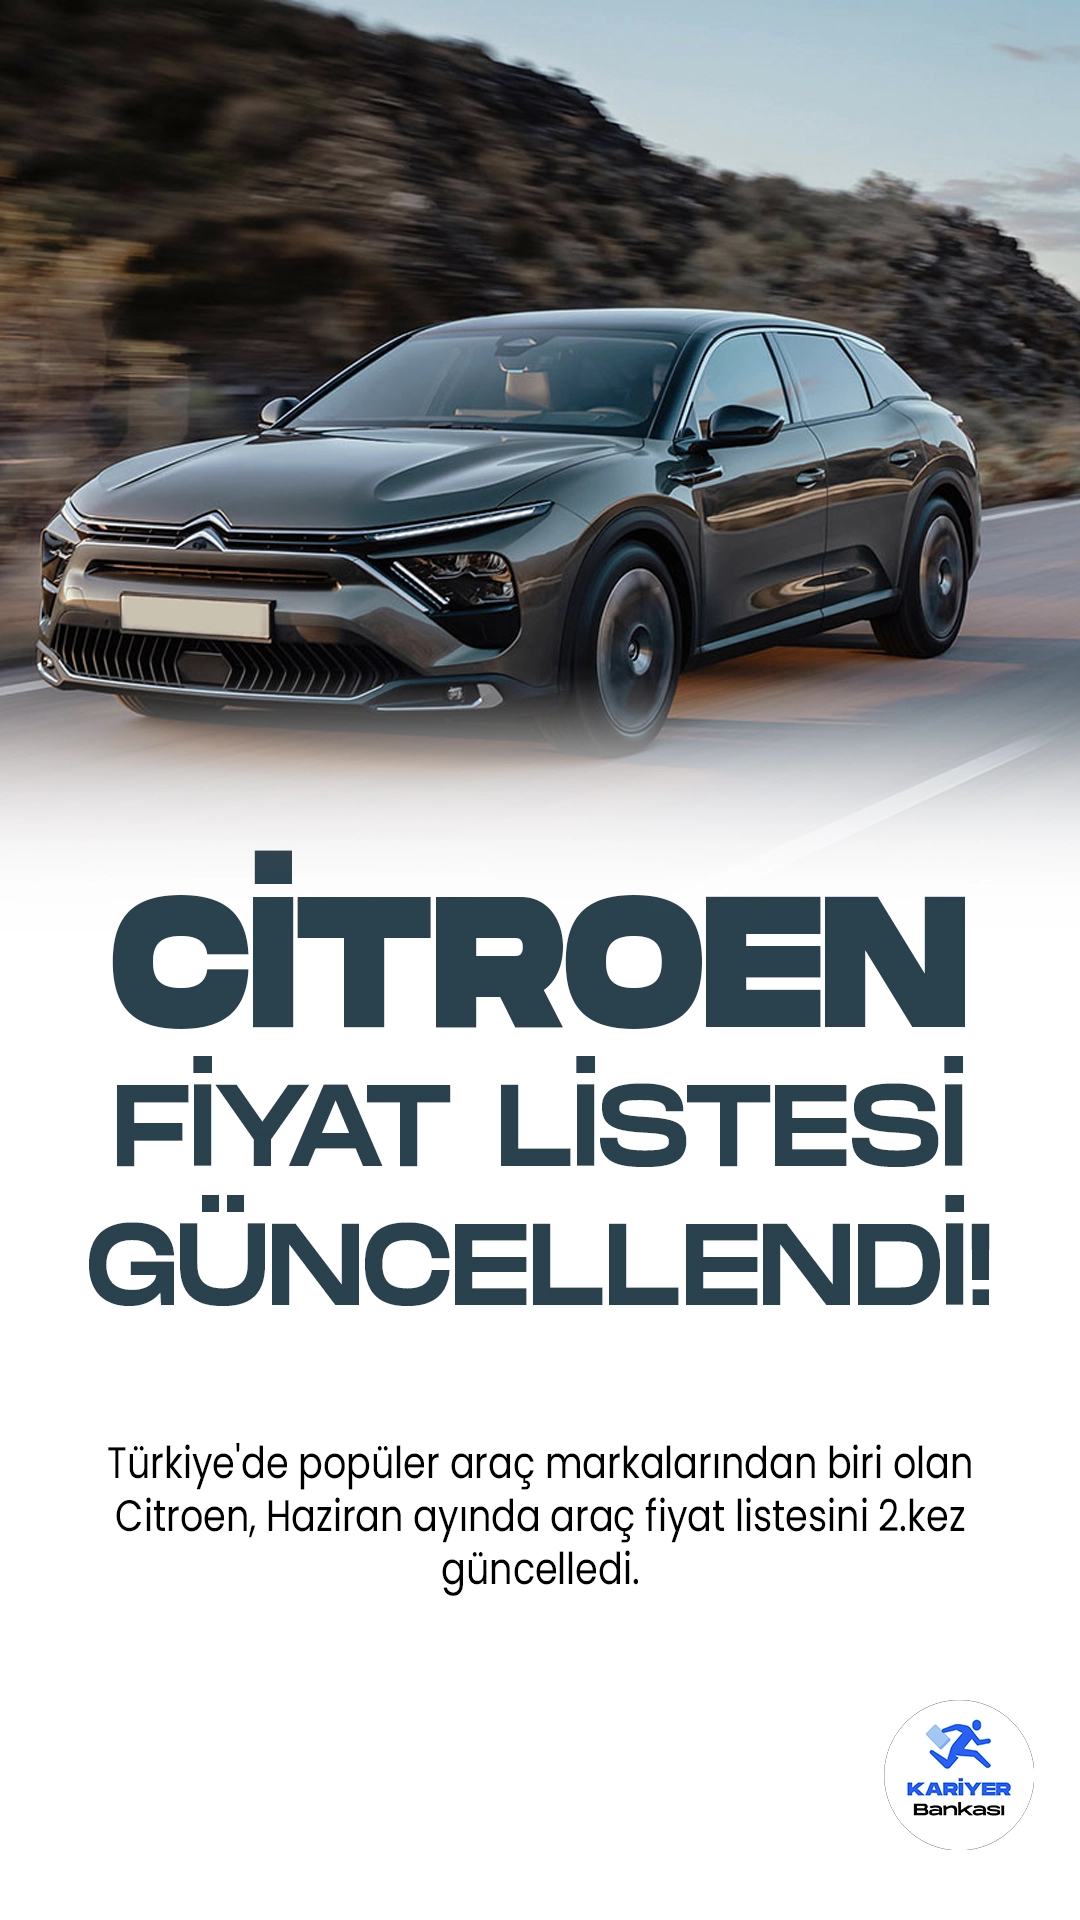 Citroen Haziran 2023 Yeni Fiyat Listesi Yayımlandı! Türkiye'de en popüler araç markalarından biri olan ve sevilen Citroen, Haziran ayında araç fiyat listesini 2.kez güncelledi. Değişen döviz kurları nedeniyle, 1 hafta içinde araç fiyatları yeninden zamlandı.